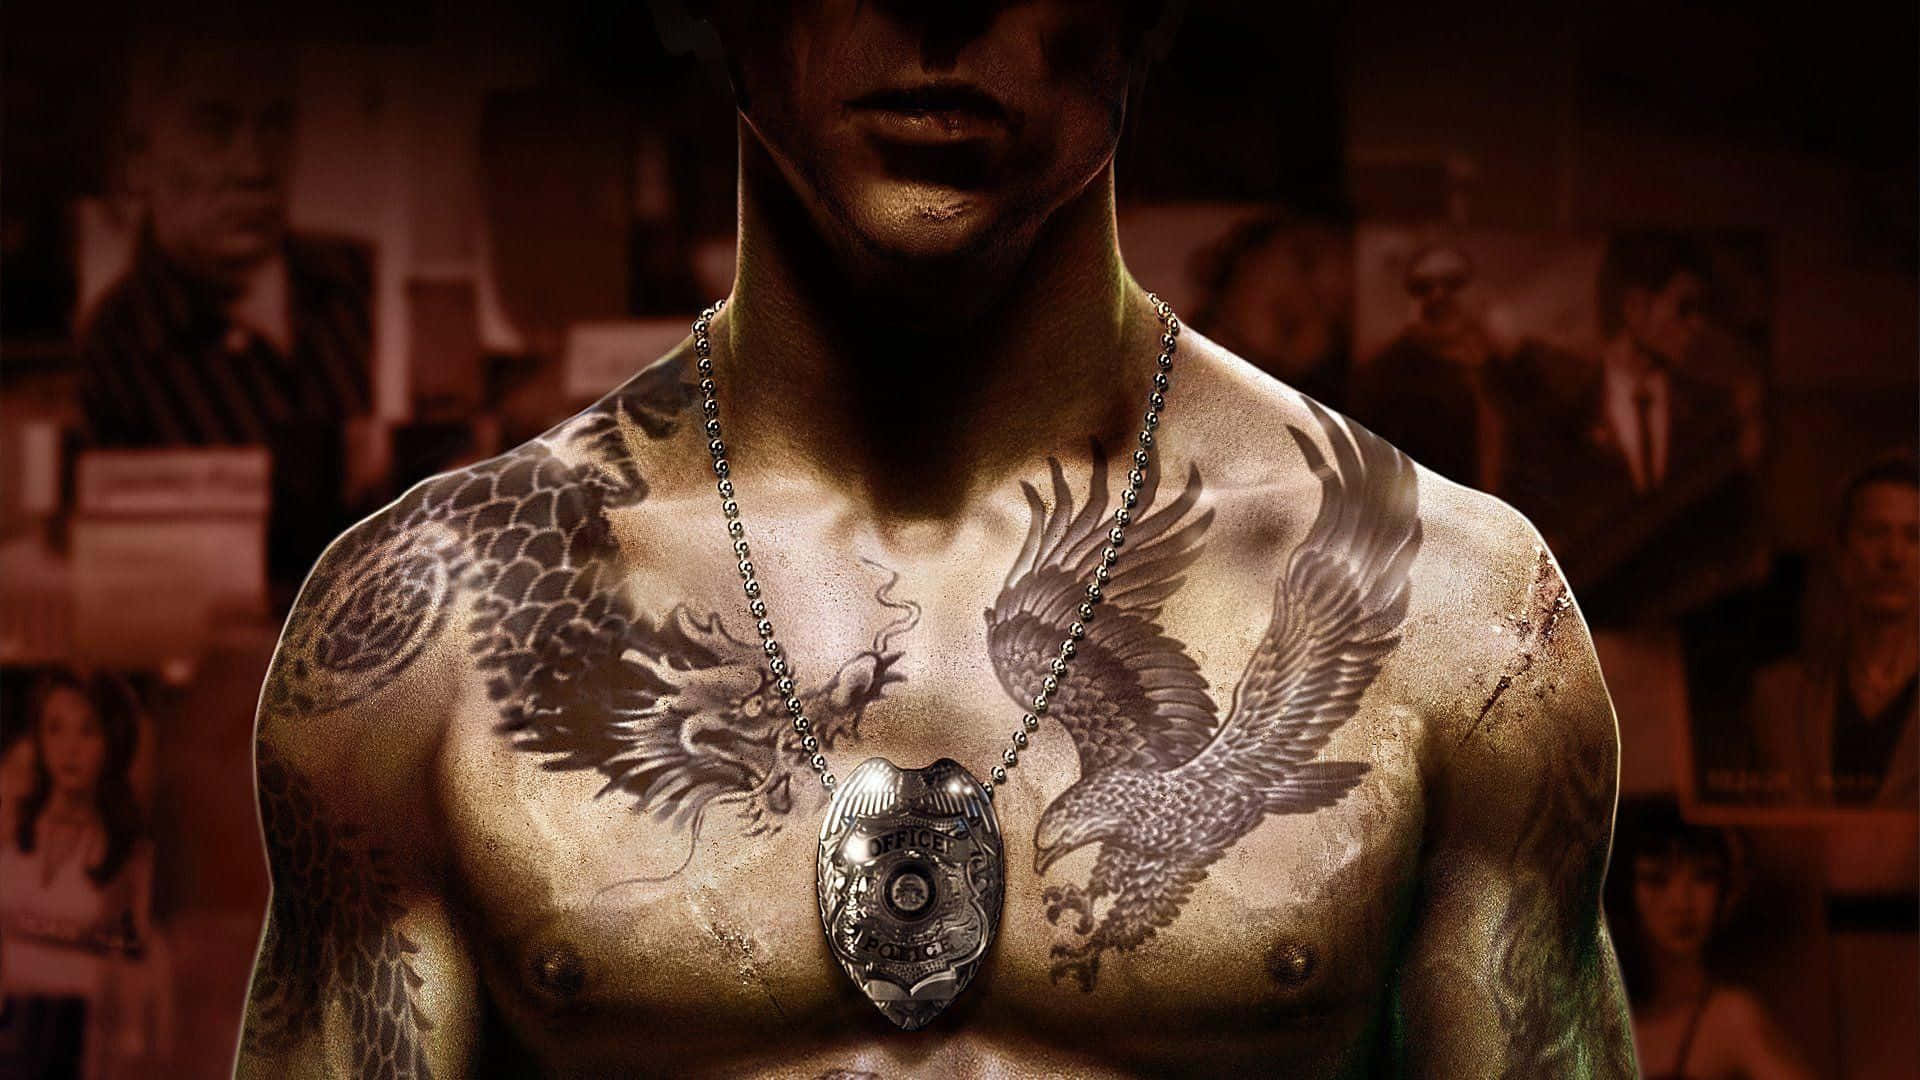 Sfondoin Alta Definizione Con I Tatuaggi Di Aquila E Drago Di Wei Shen In Sleeping Dogs.